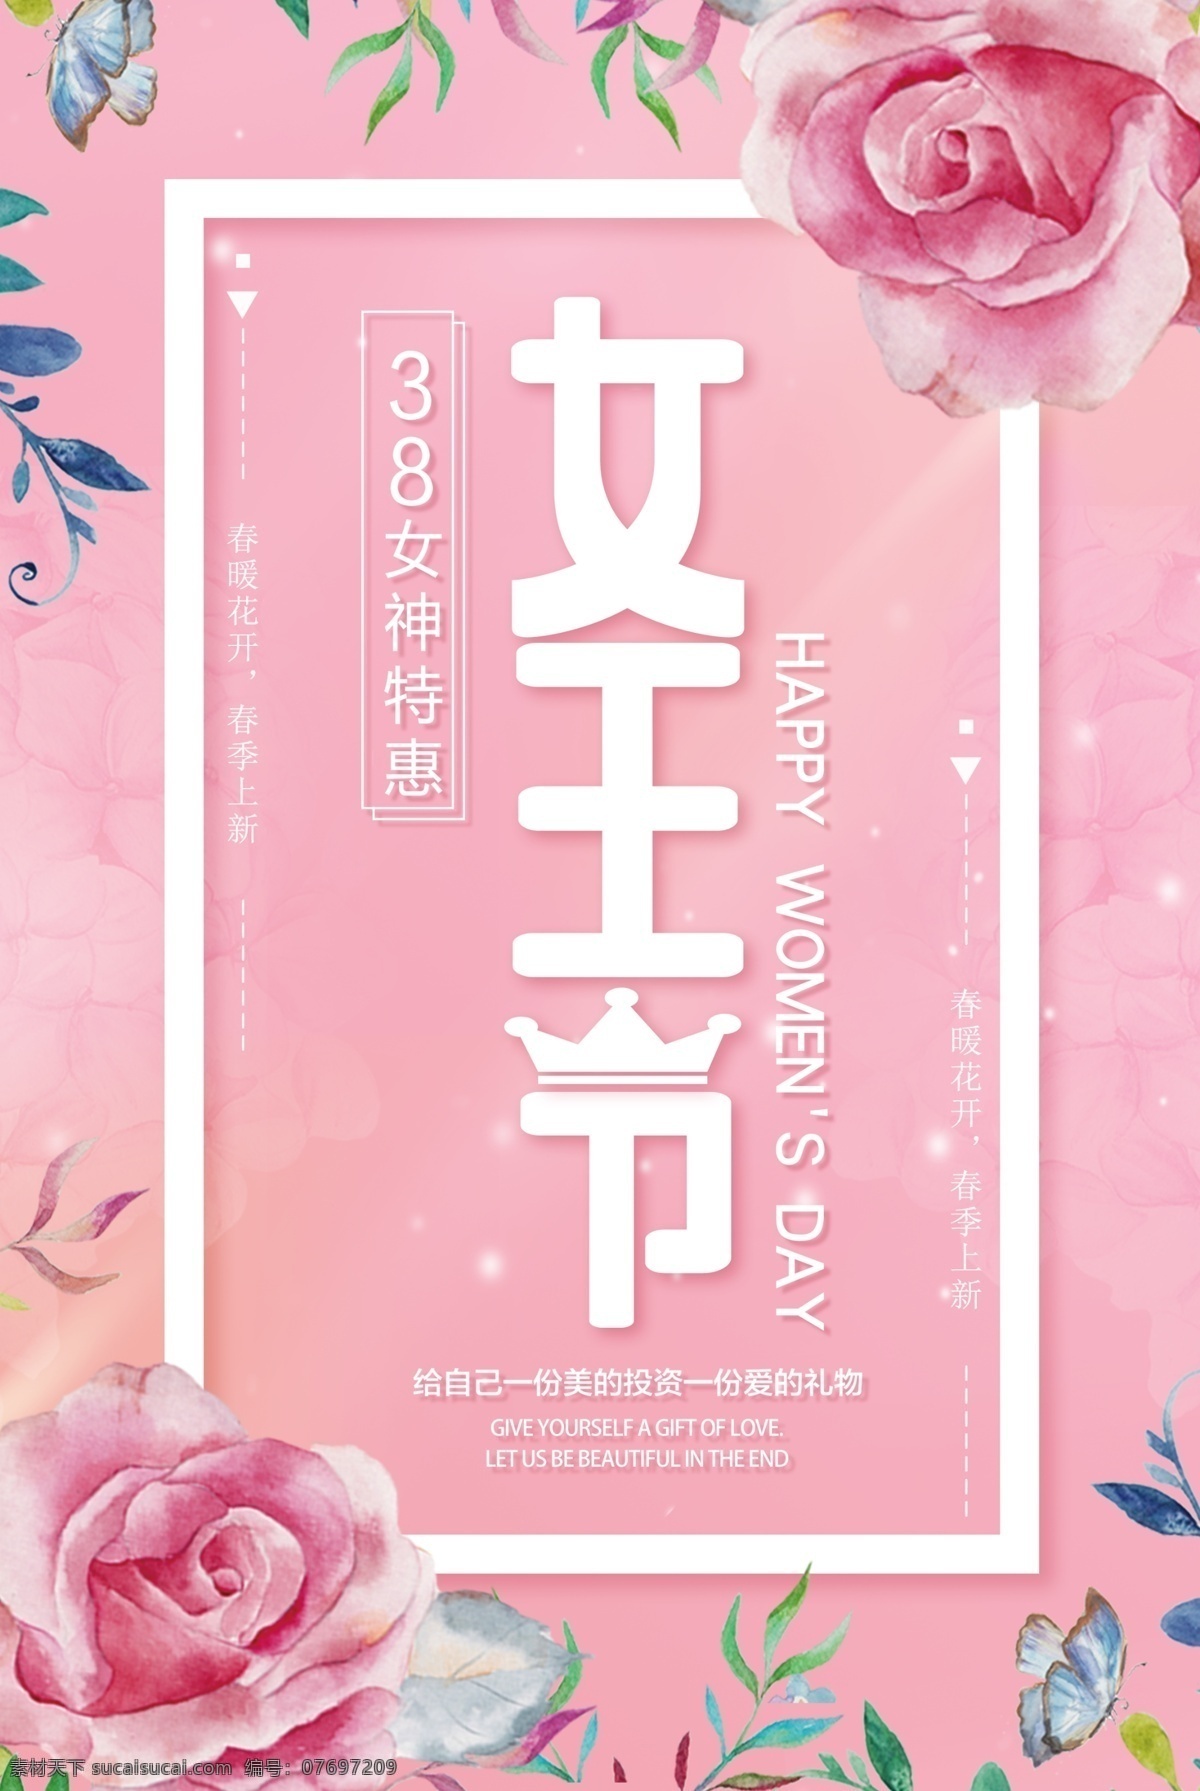 粉色 浪漫 花朵 女王 节 促销 海报 妇女节 商场海报 女王节 3.8 商场展架 浪漫花朵